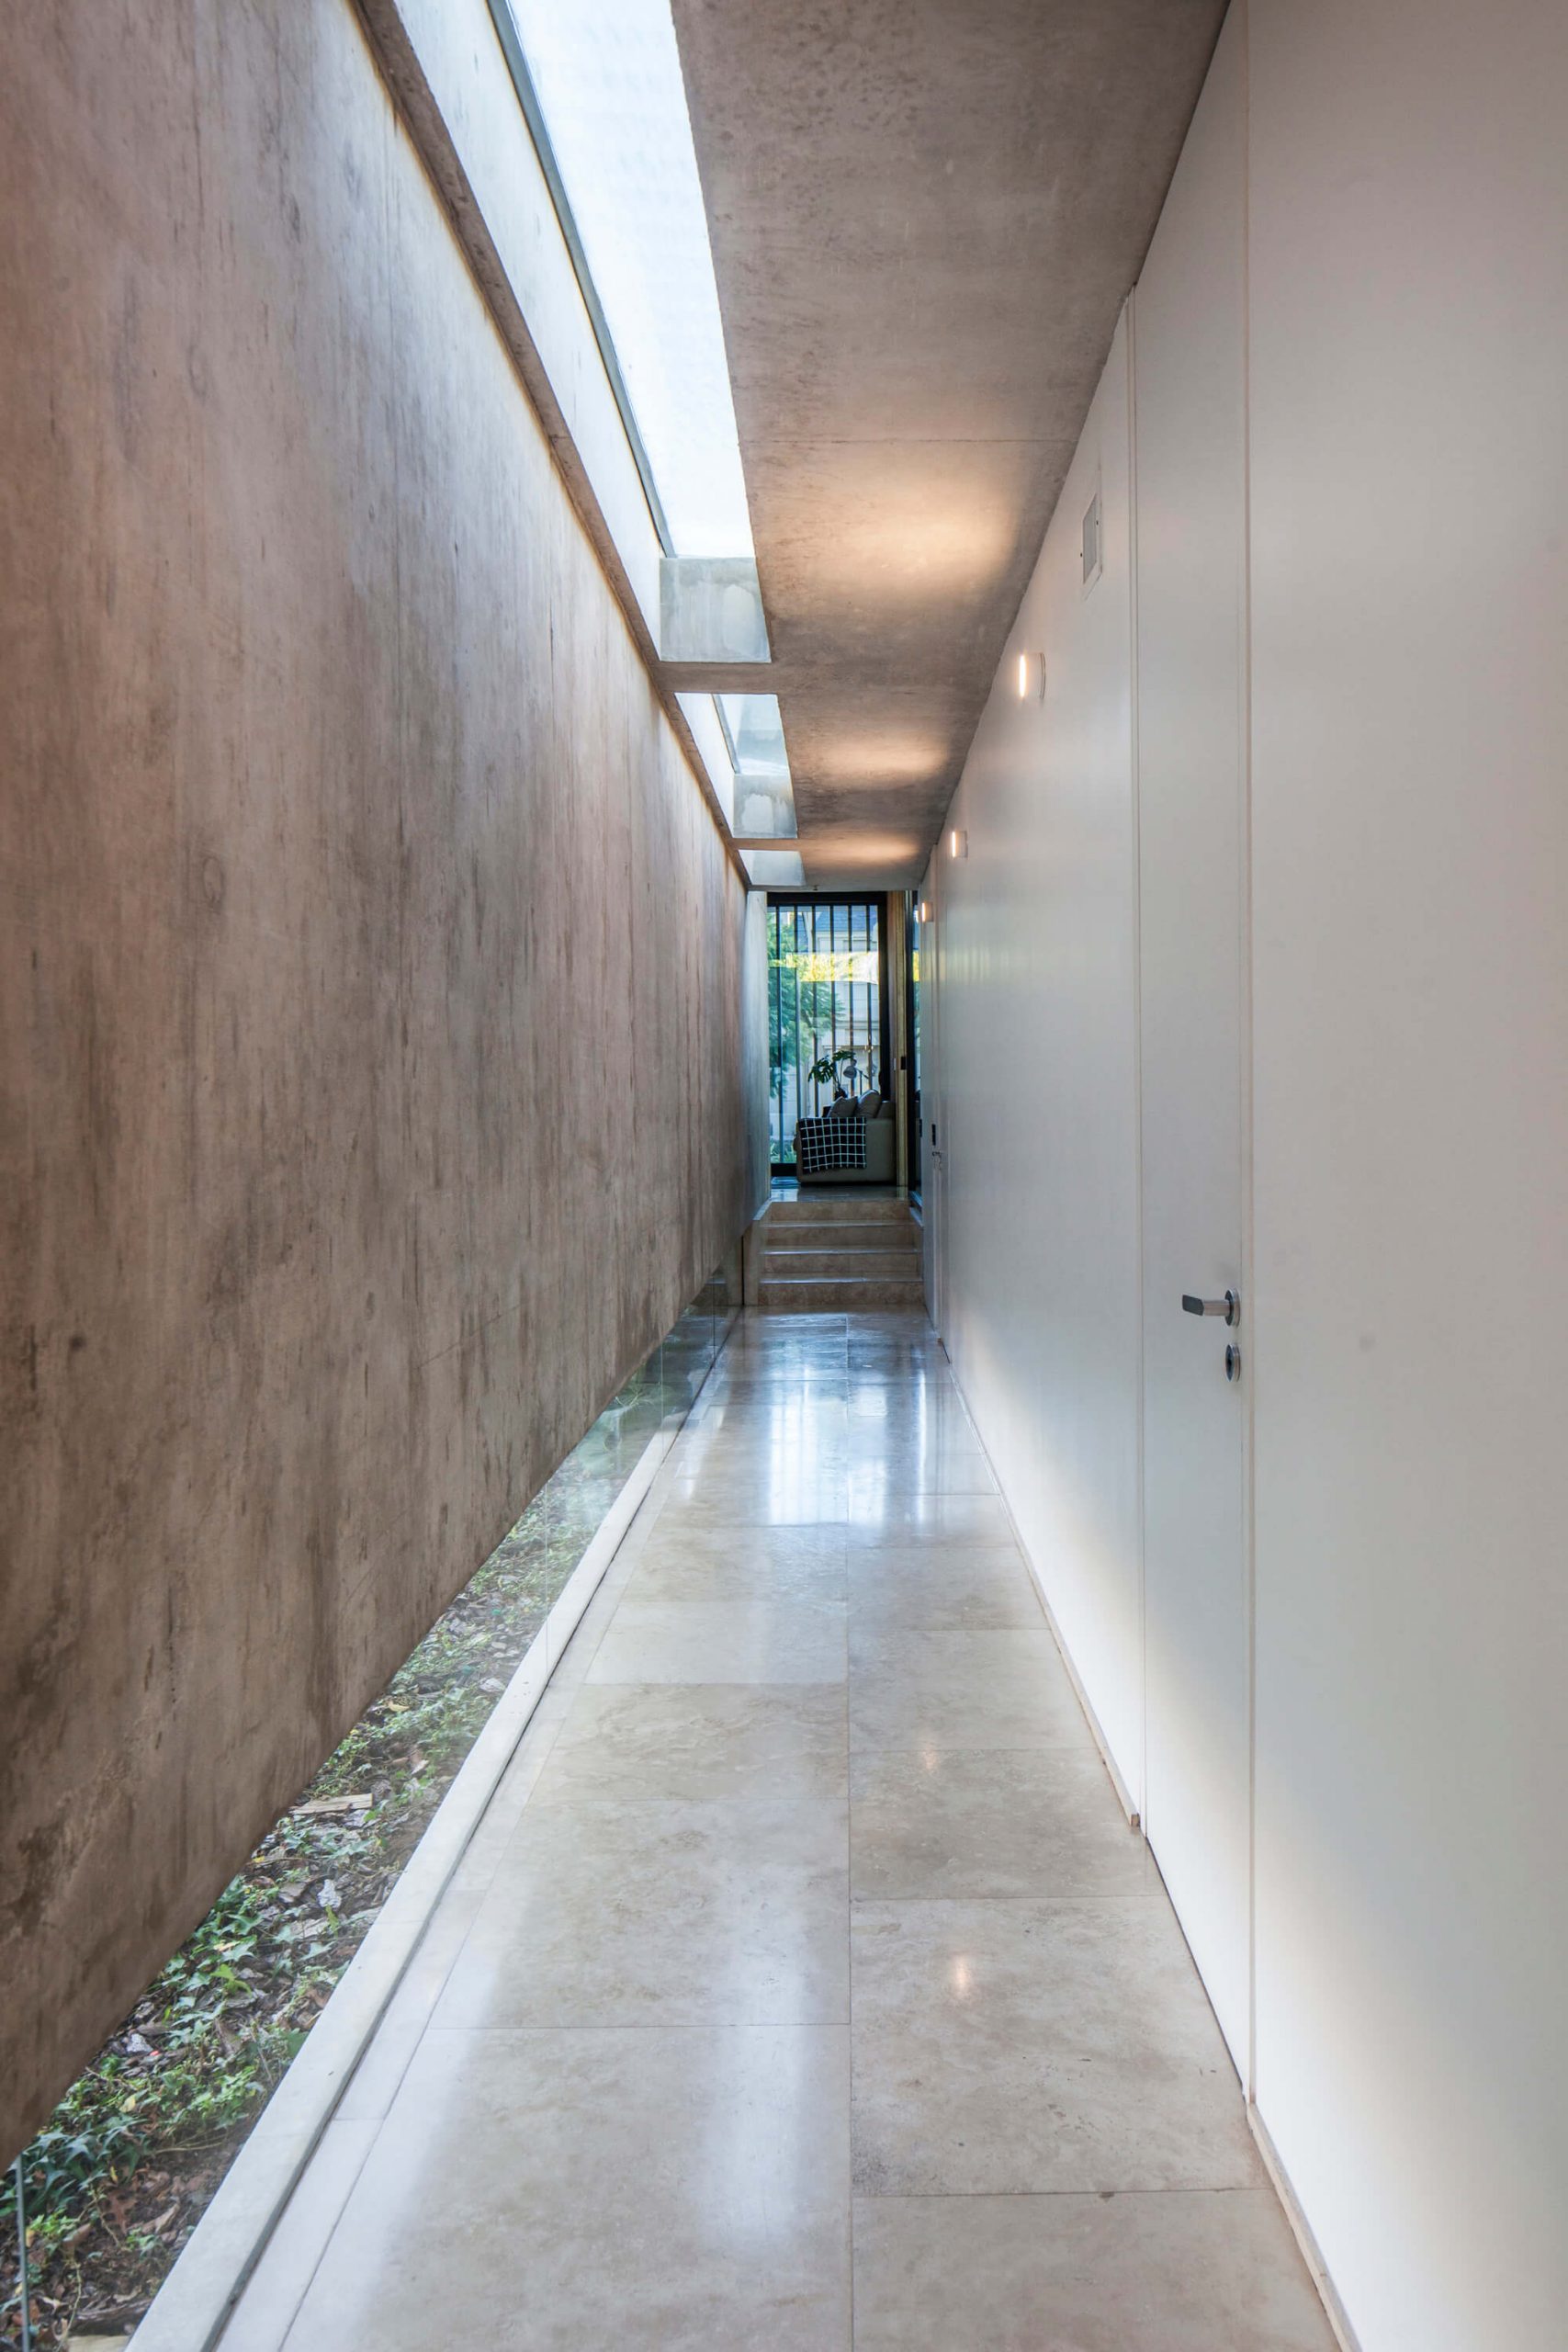 Residência BT Estudio Jorgelina Tortorici Arq, corredor com piso de concreto, parede de concreto, iluminação zenital e janela em fita no piso.